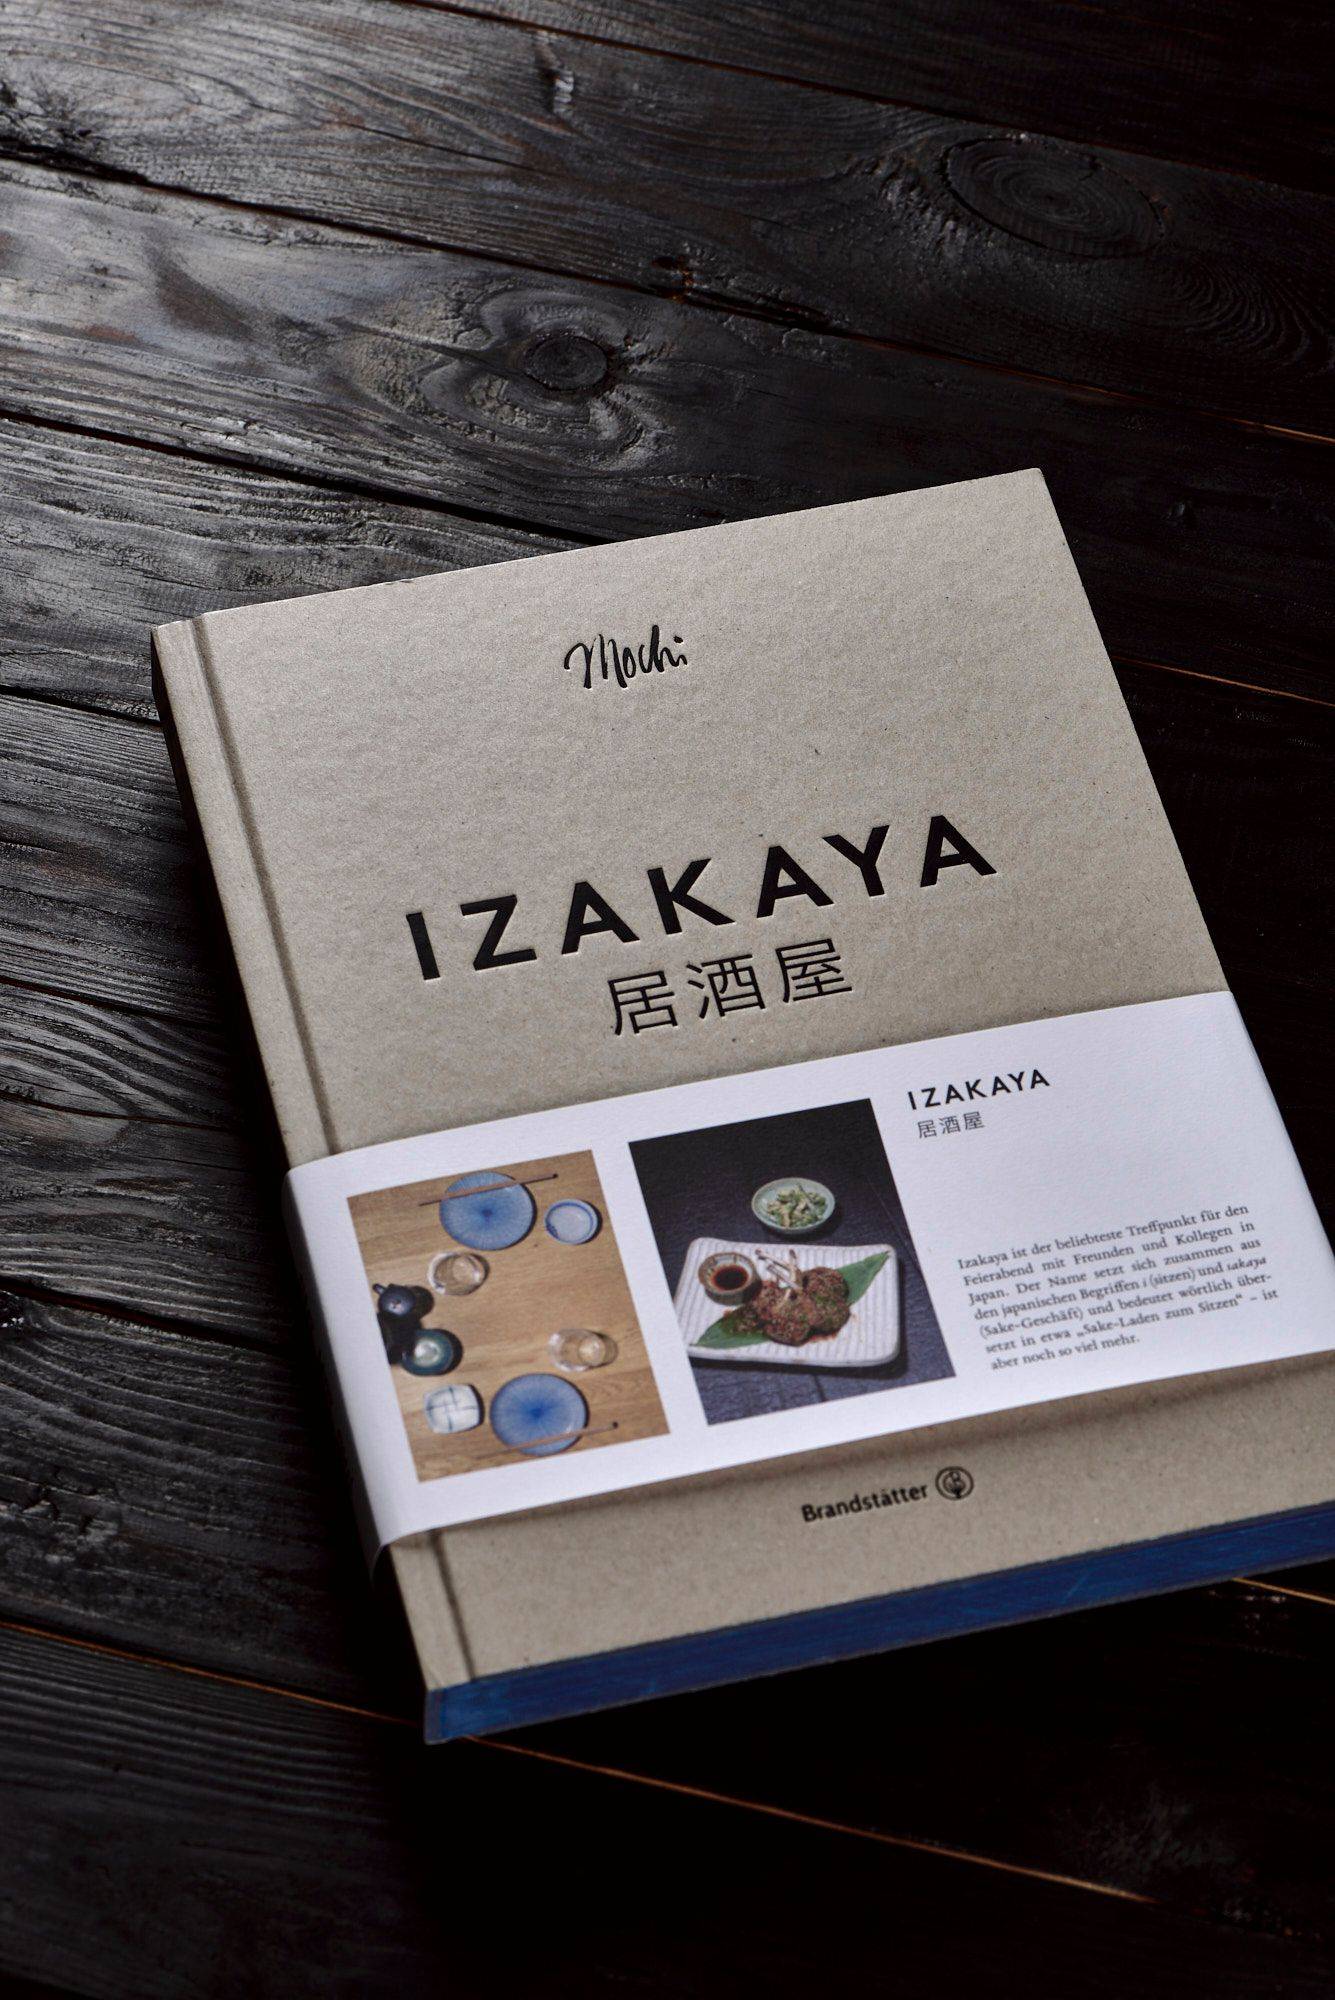 izakaya kochbuch mit schwarzem holzuntergrund